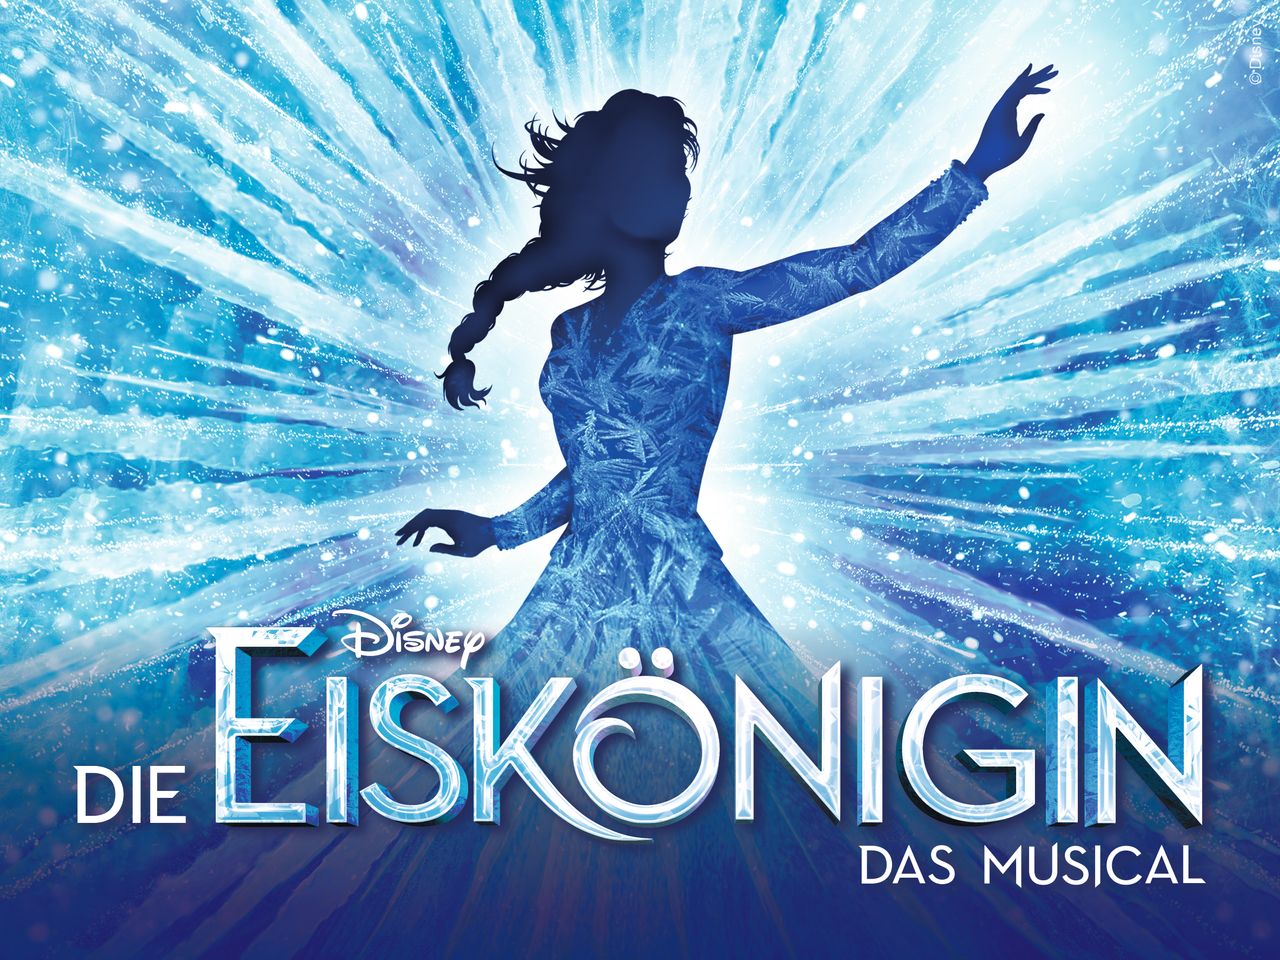 Disneys DIE EISKÖNIGIN - das Musical